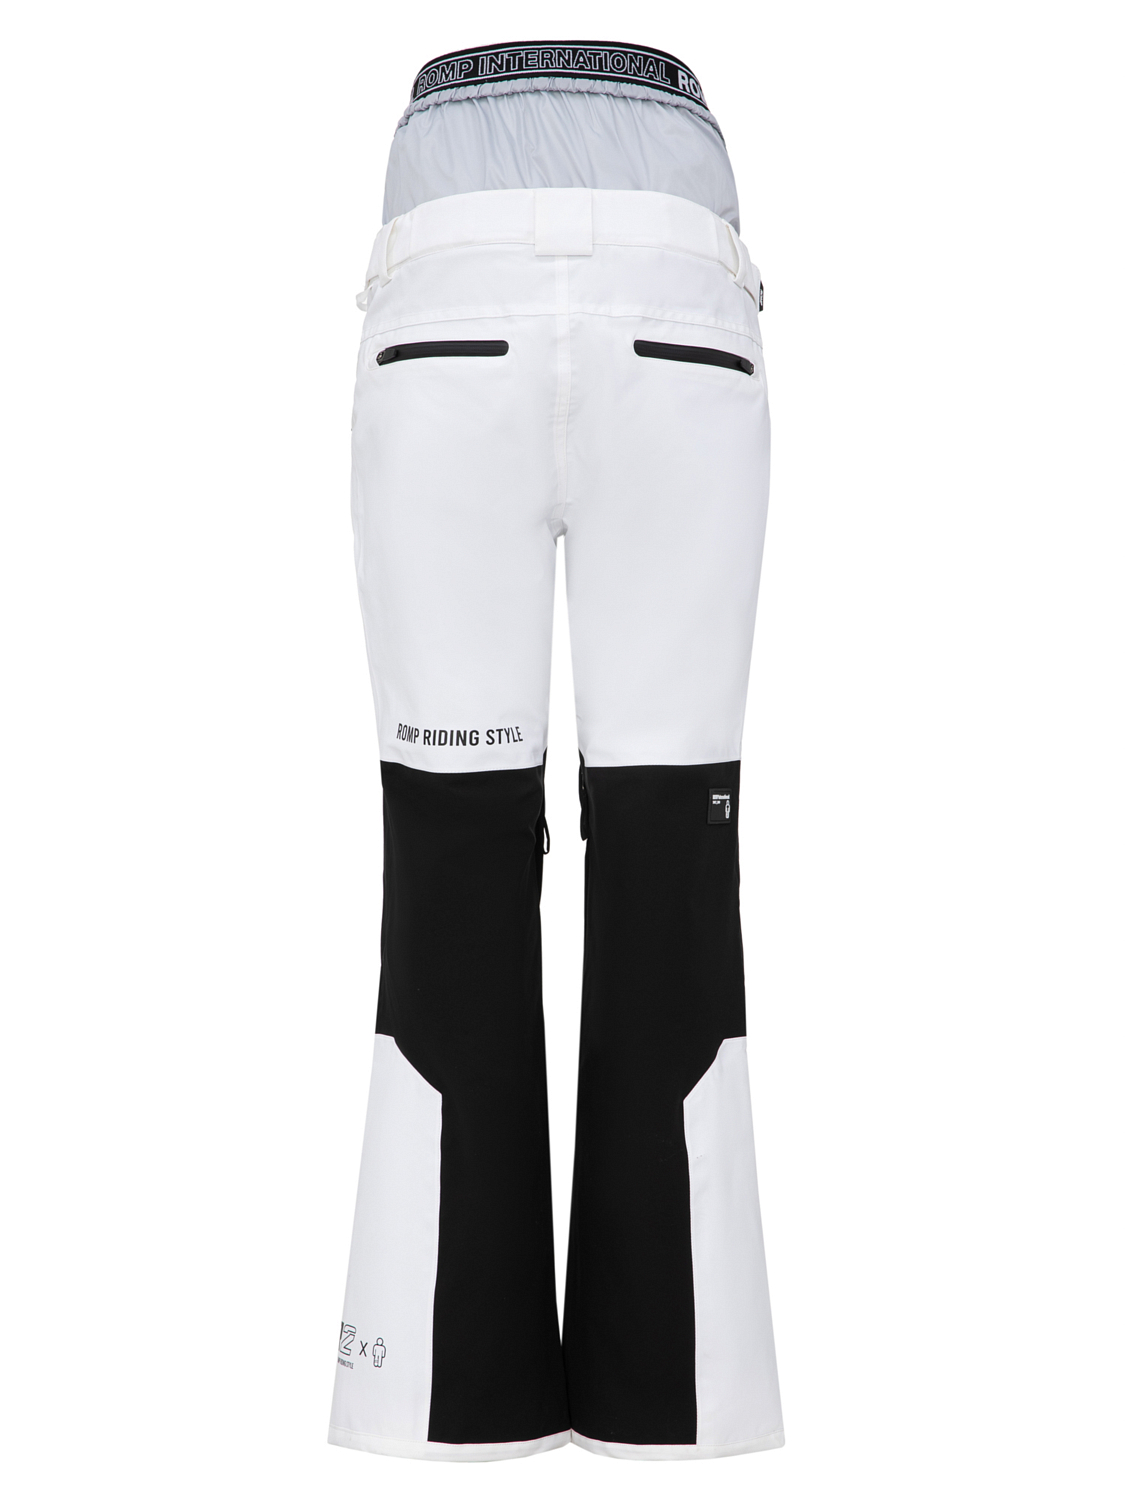 Брюки сноубордические ROMP R2 Slim Pants W White